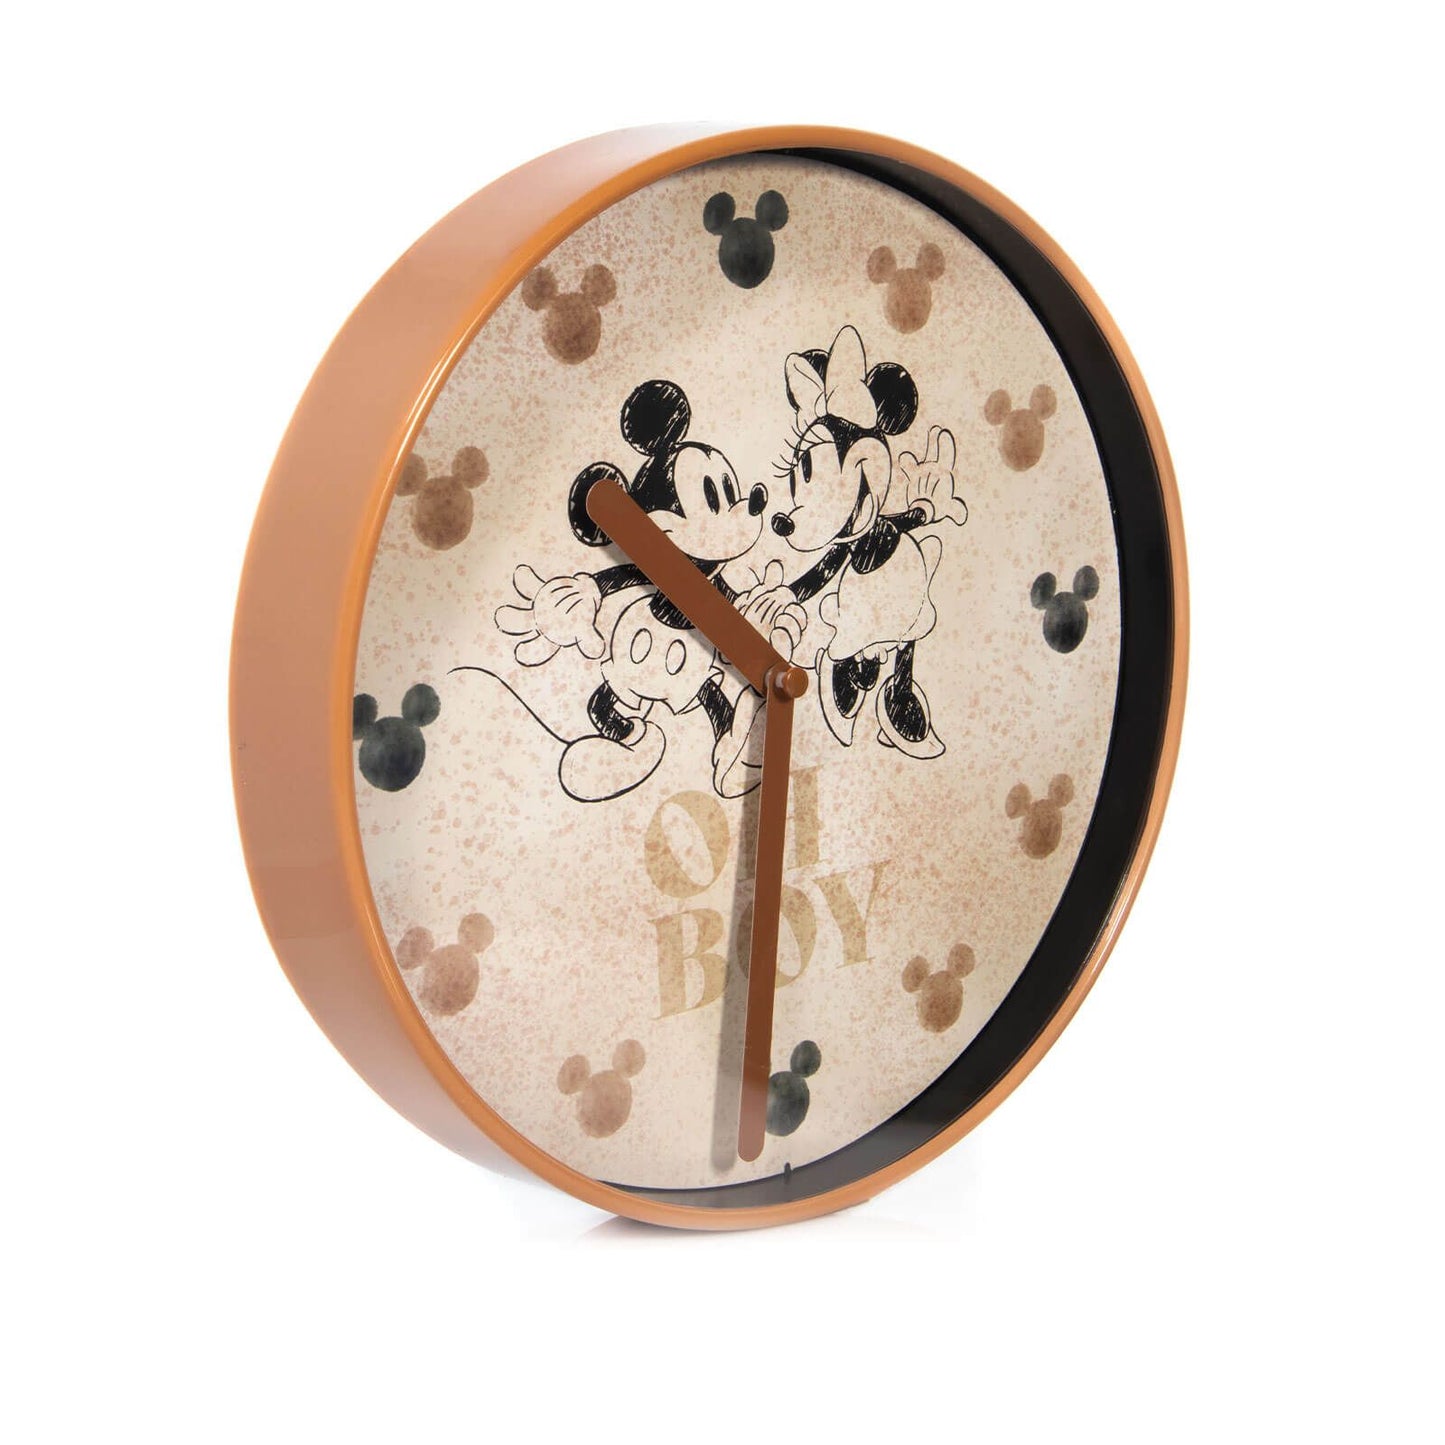 Disney - Relógio de Parede Mickey e Minnie